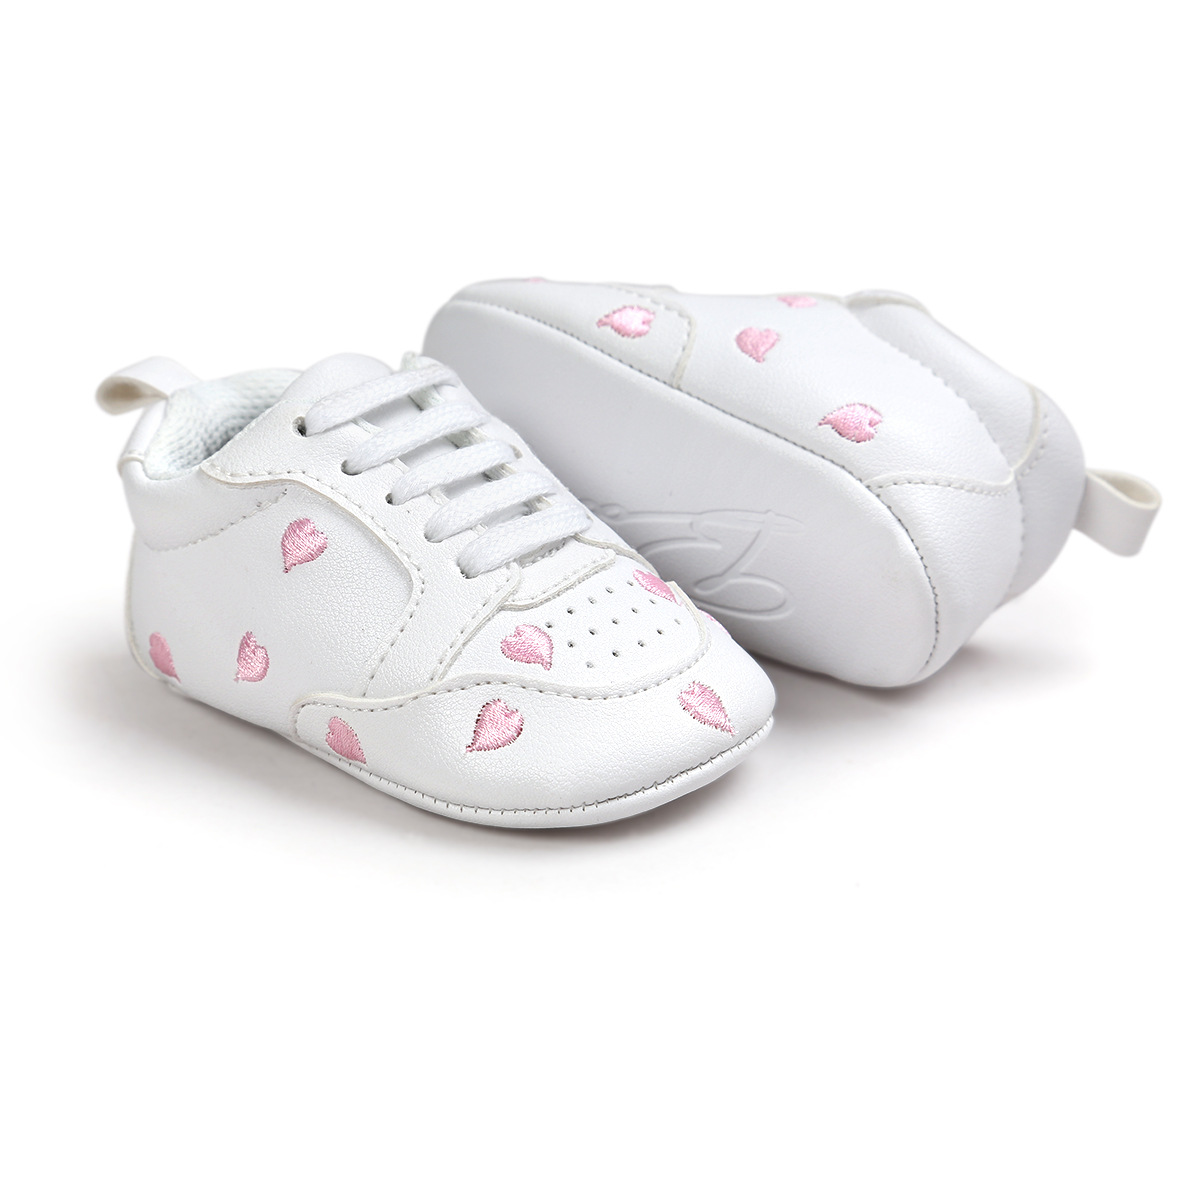 Chaussures bébé en PU artificiel - Ref 3436860 Image 61